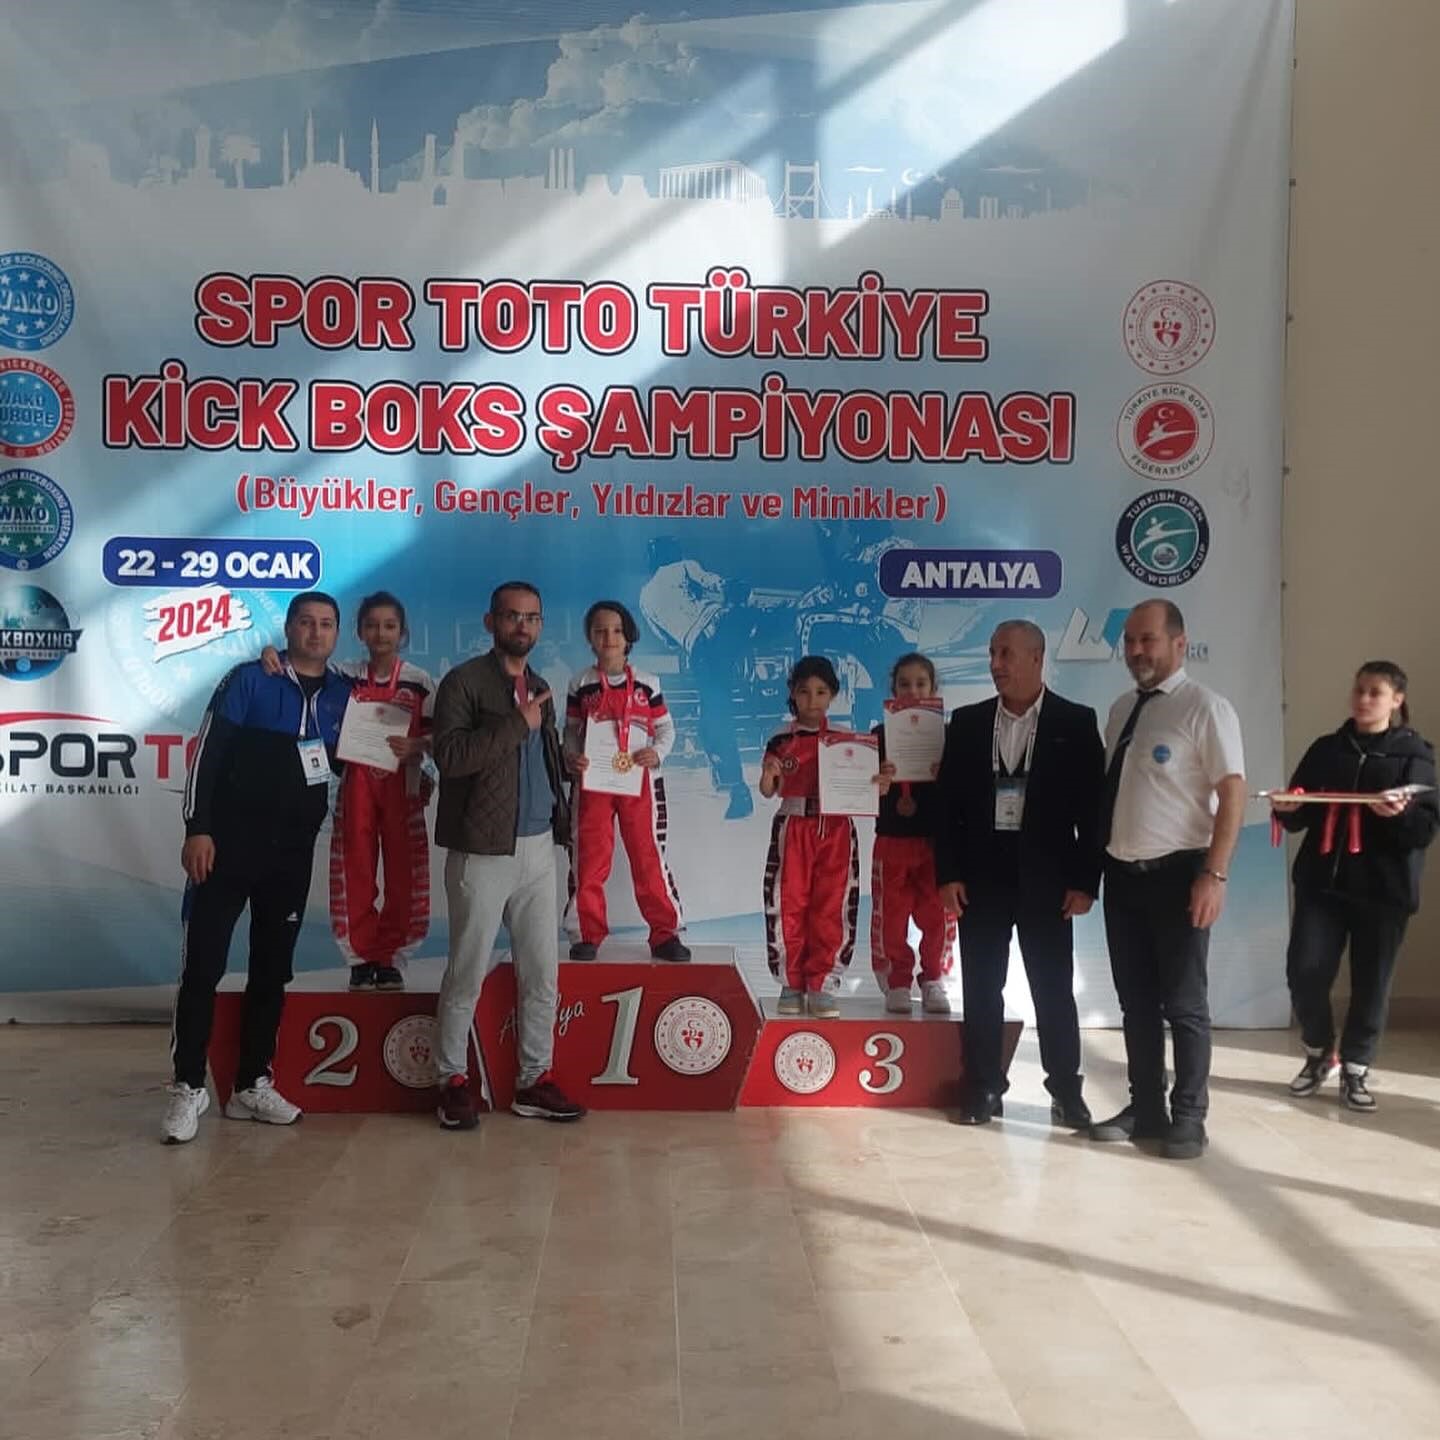 Niğdeli sporcular Kick Boks Türkiye Şampiyonası’ndan 5 madalya ile döndü
